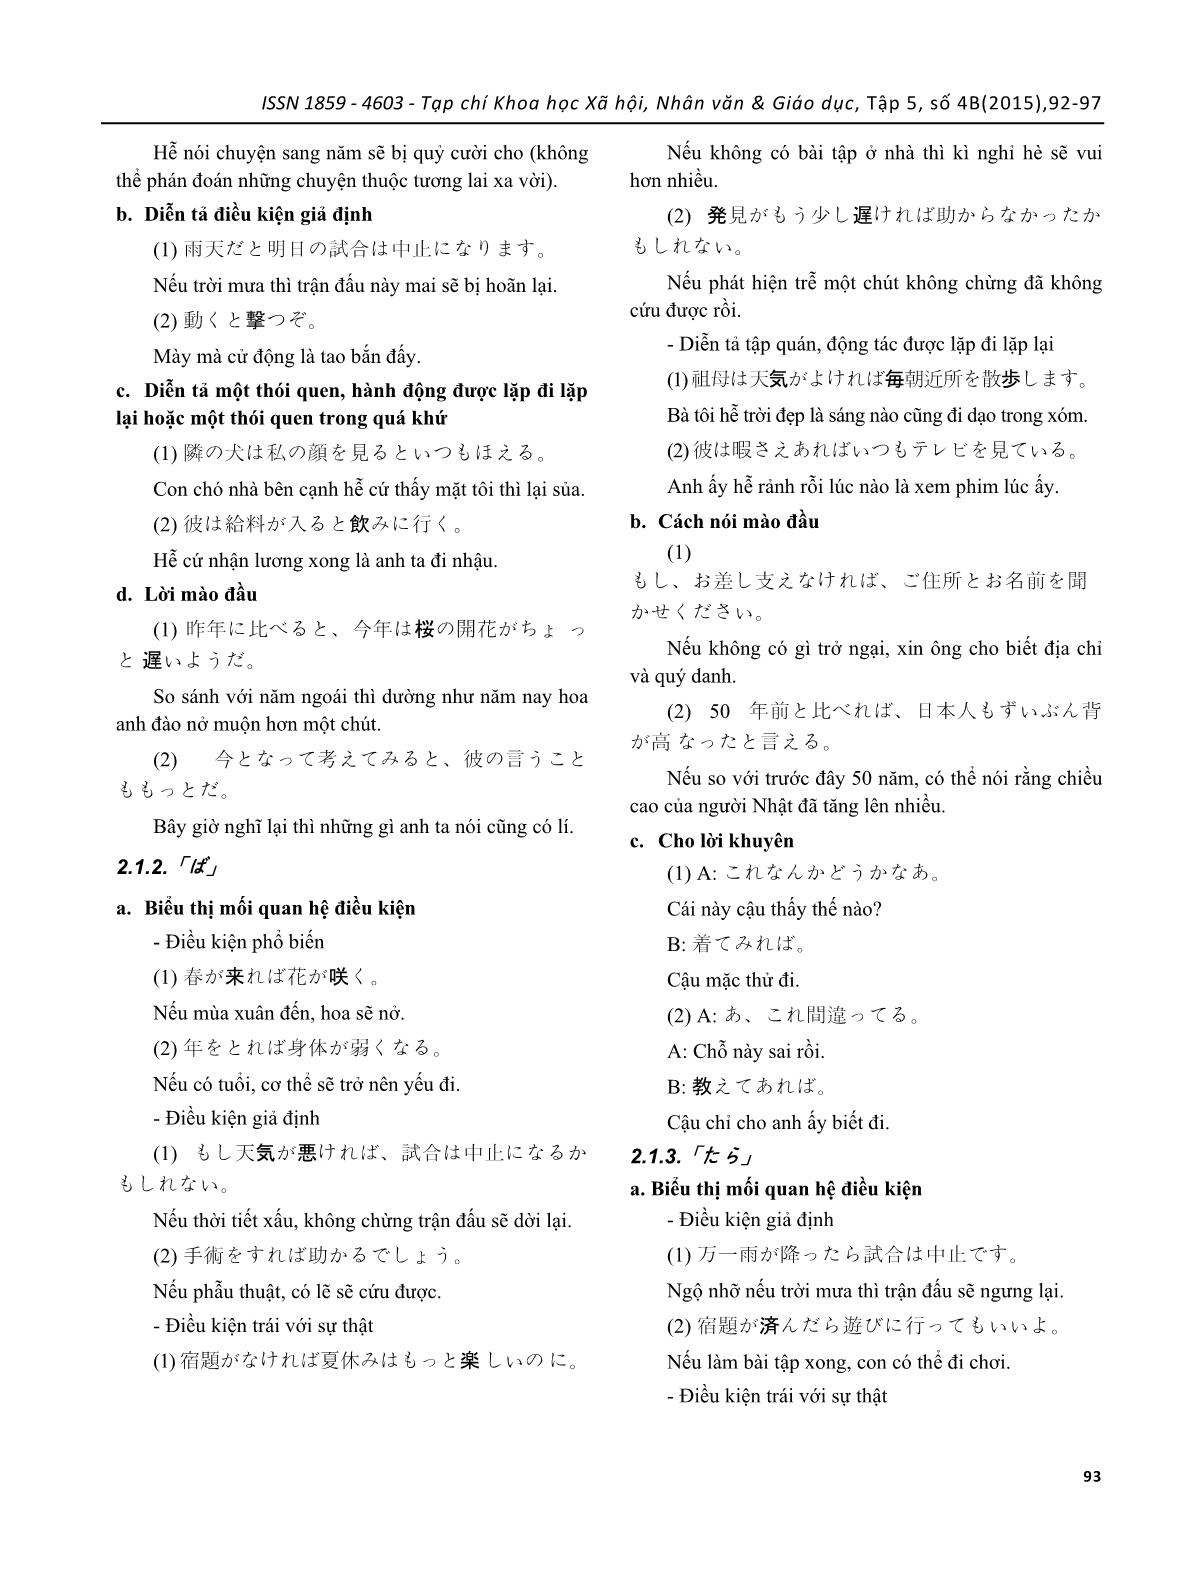 Khảo sát lỗi thường gặp của sinh viên tiếng Nhật sử dụng câu điều kiện “to”, “tara”, “nara”, “ba” và biện pháp khắc phục trang 2